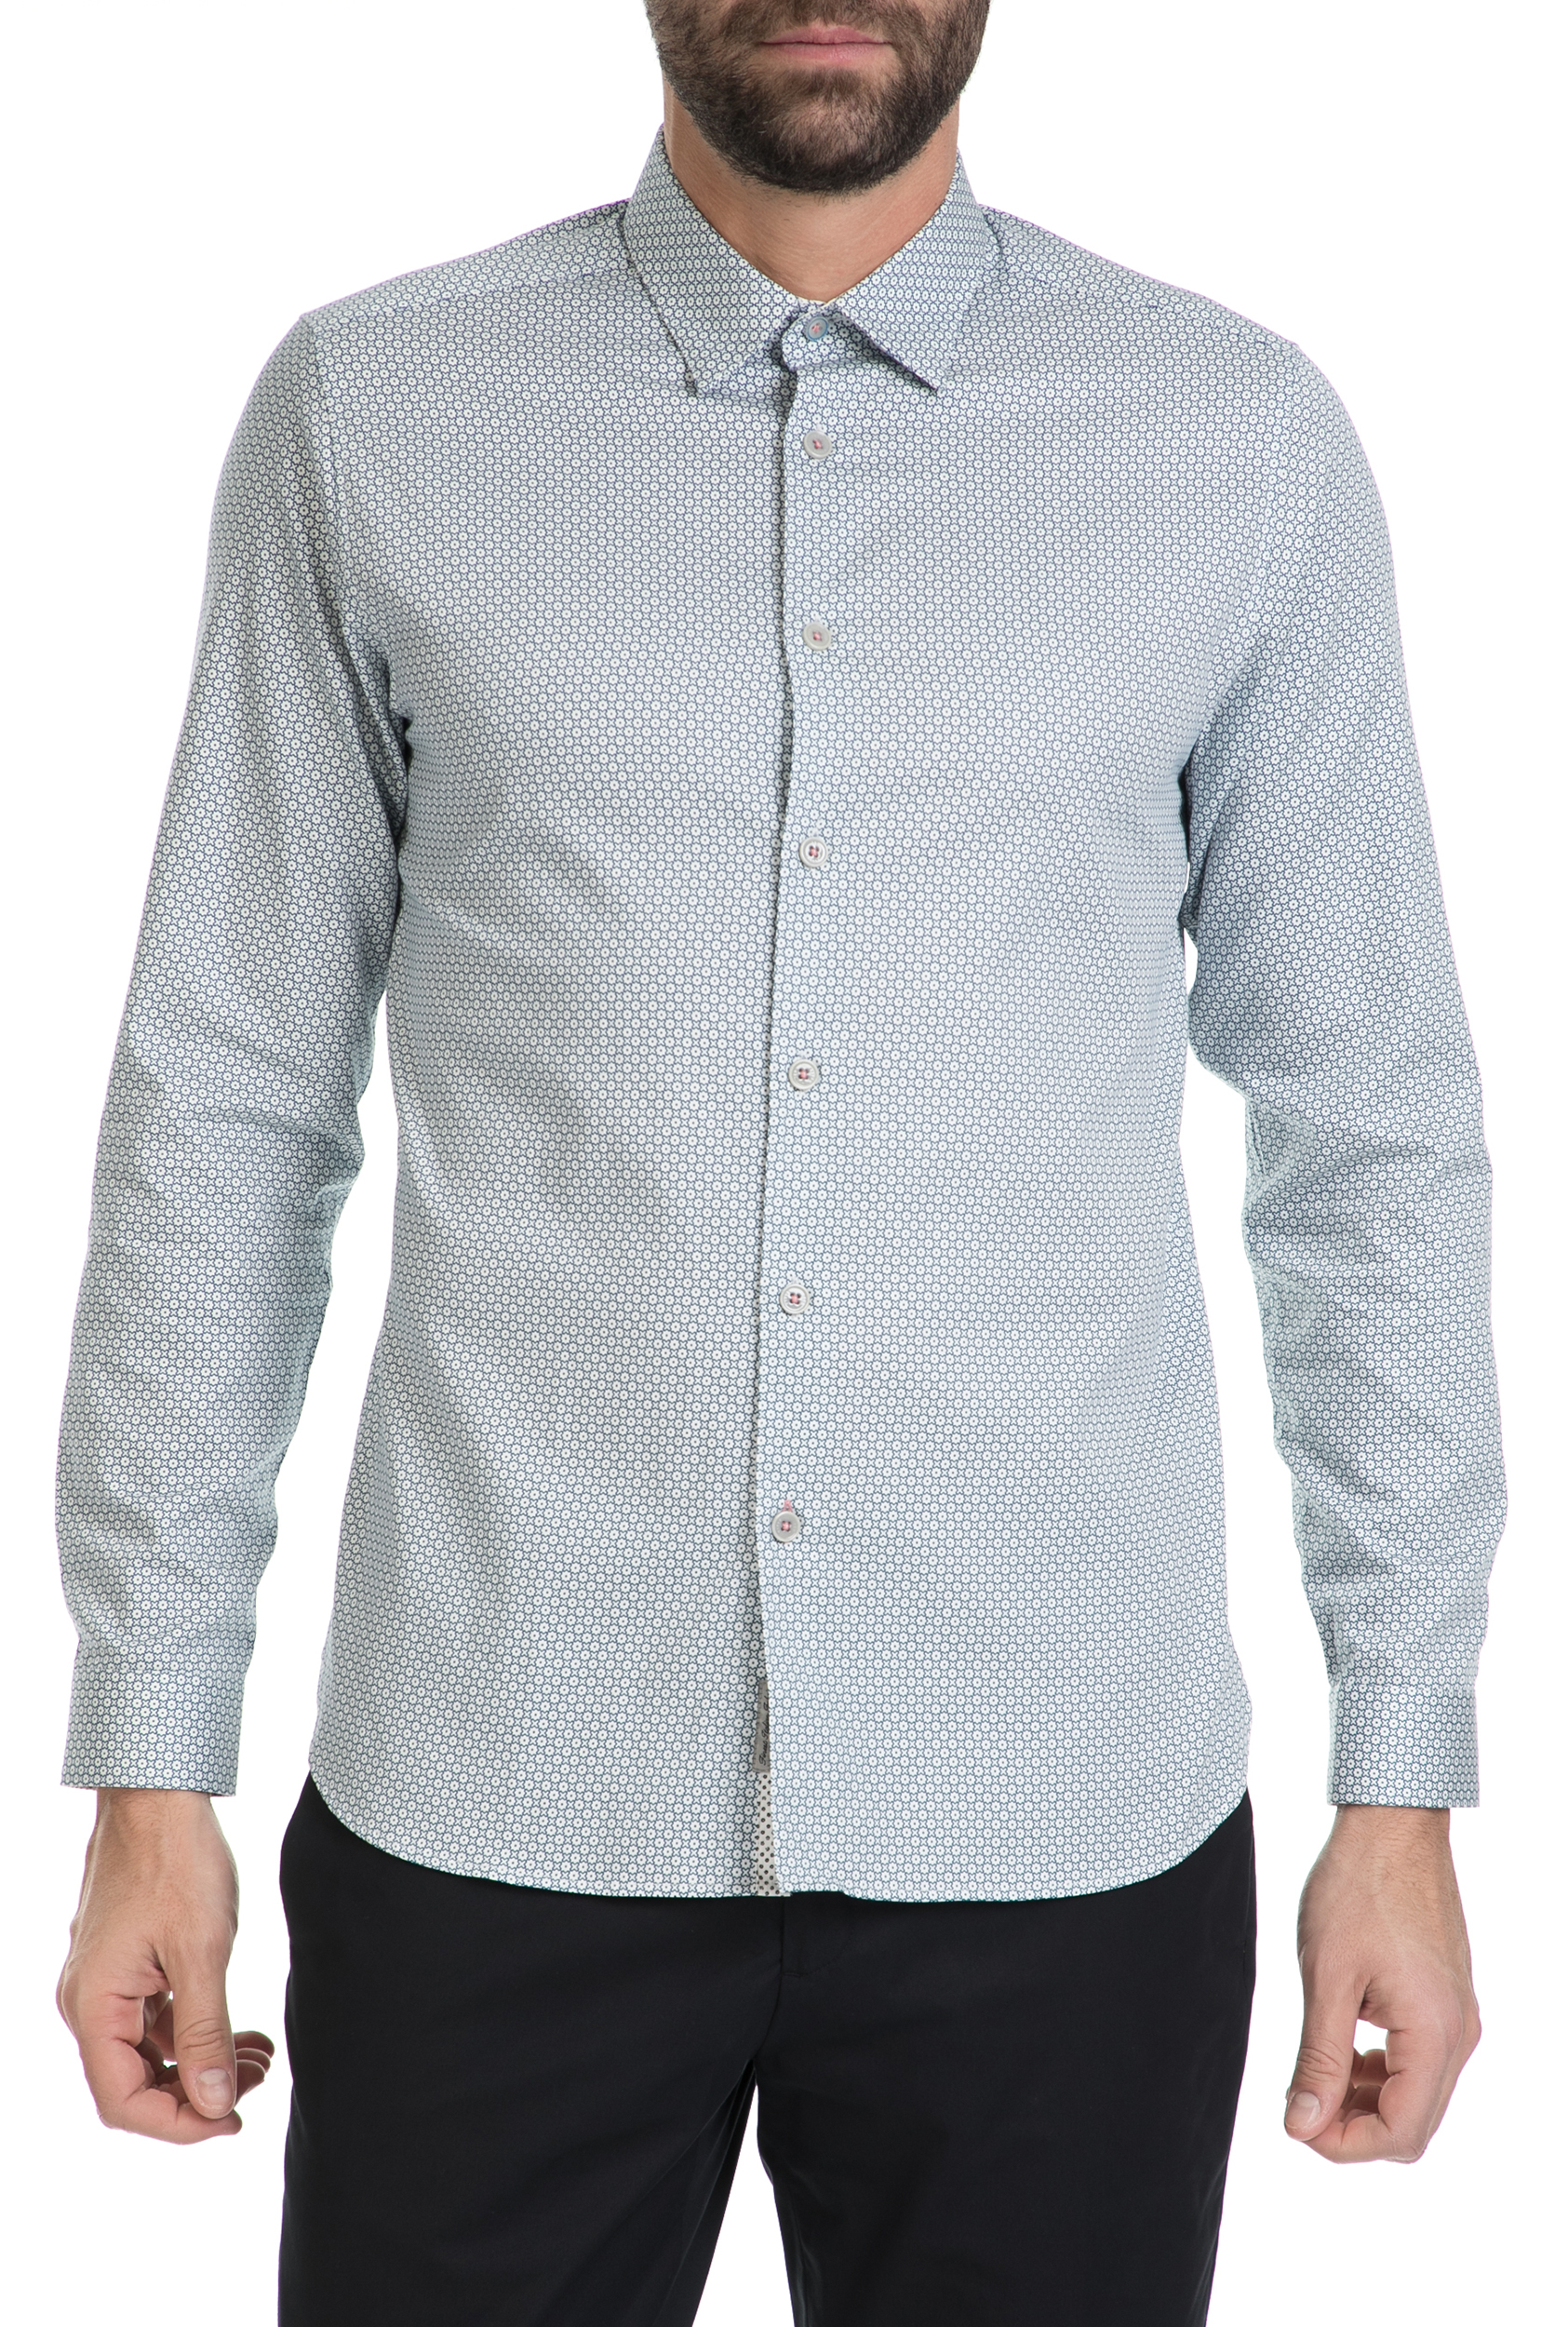 Ανδρικά/Ρούχα/Πουκάμισα/Μακρυμάνικα TED BAKER - Ανδρικό μακρυμάνικο πουκάμισο HOLIC γαλάζιο με μοτίβο